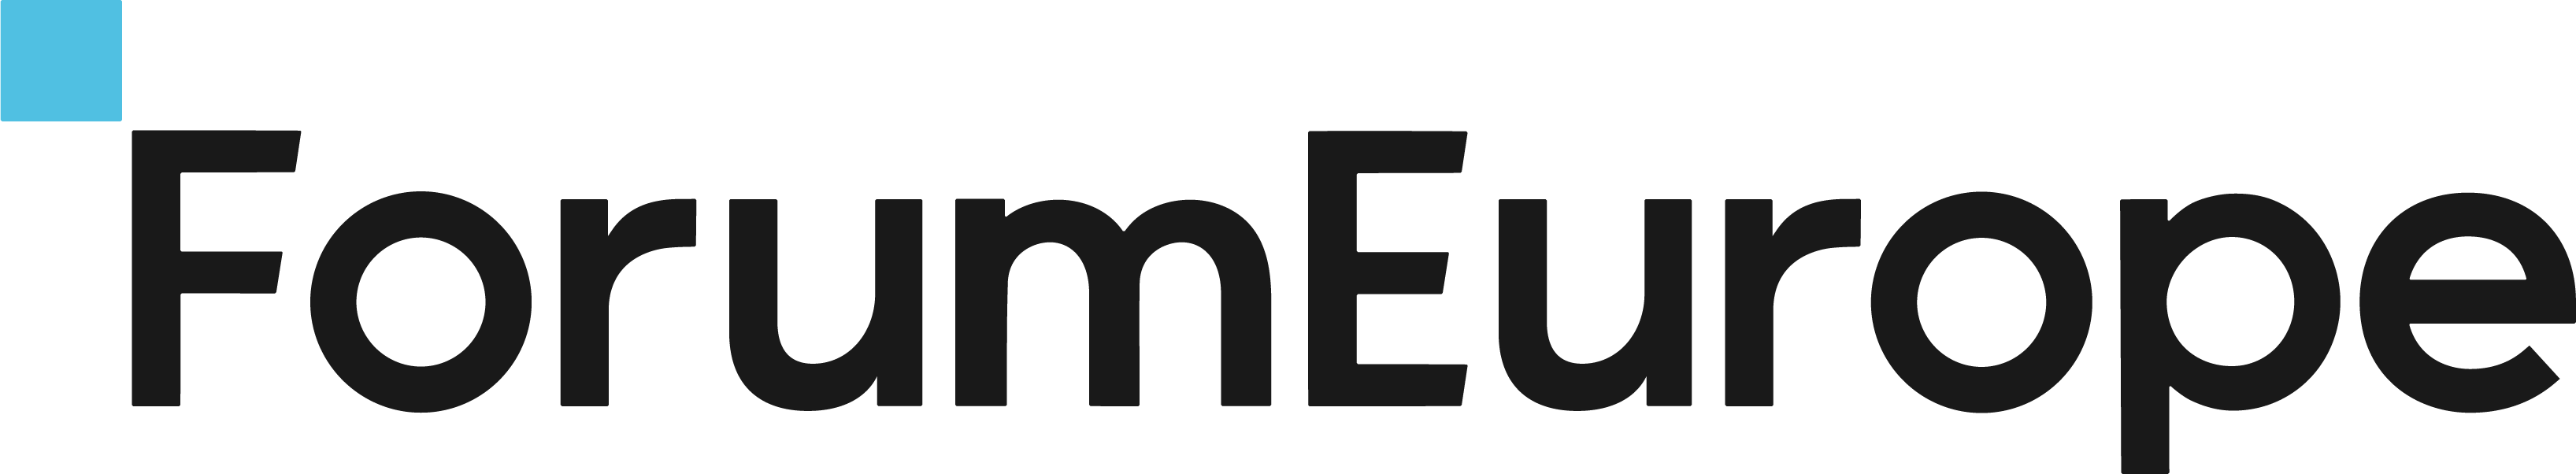 Forum Europe logo